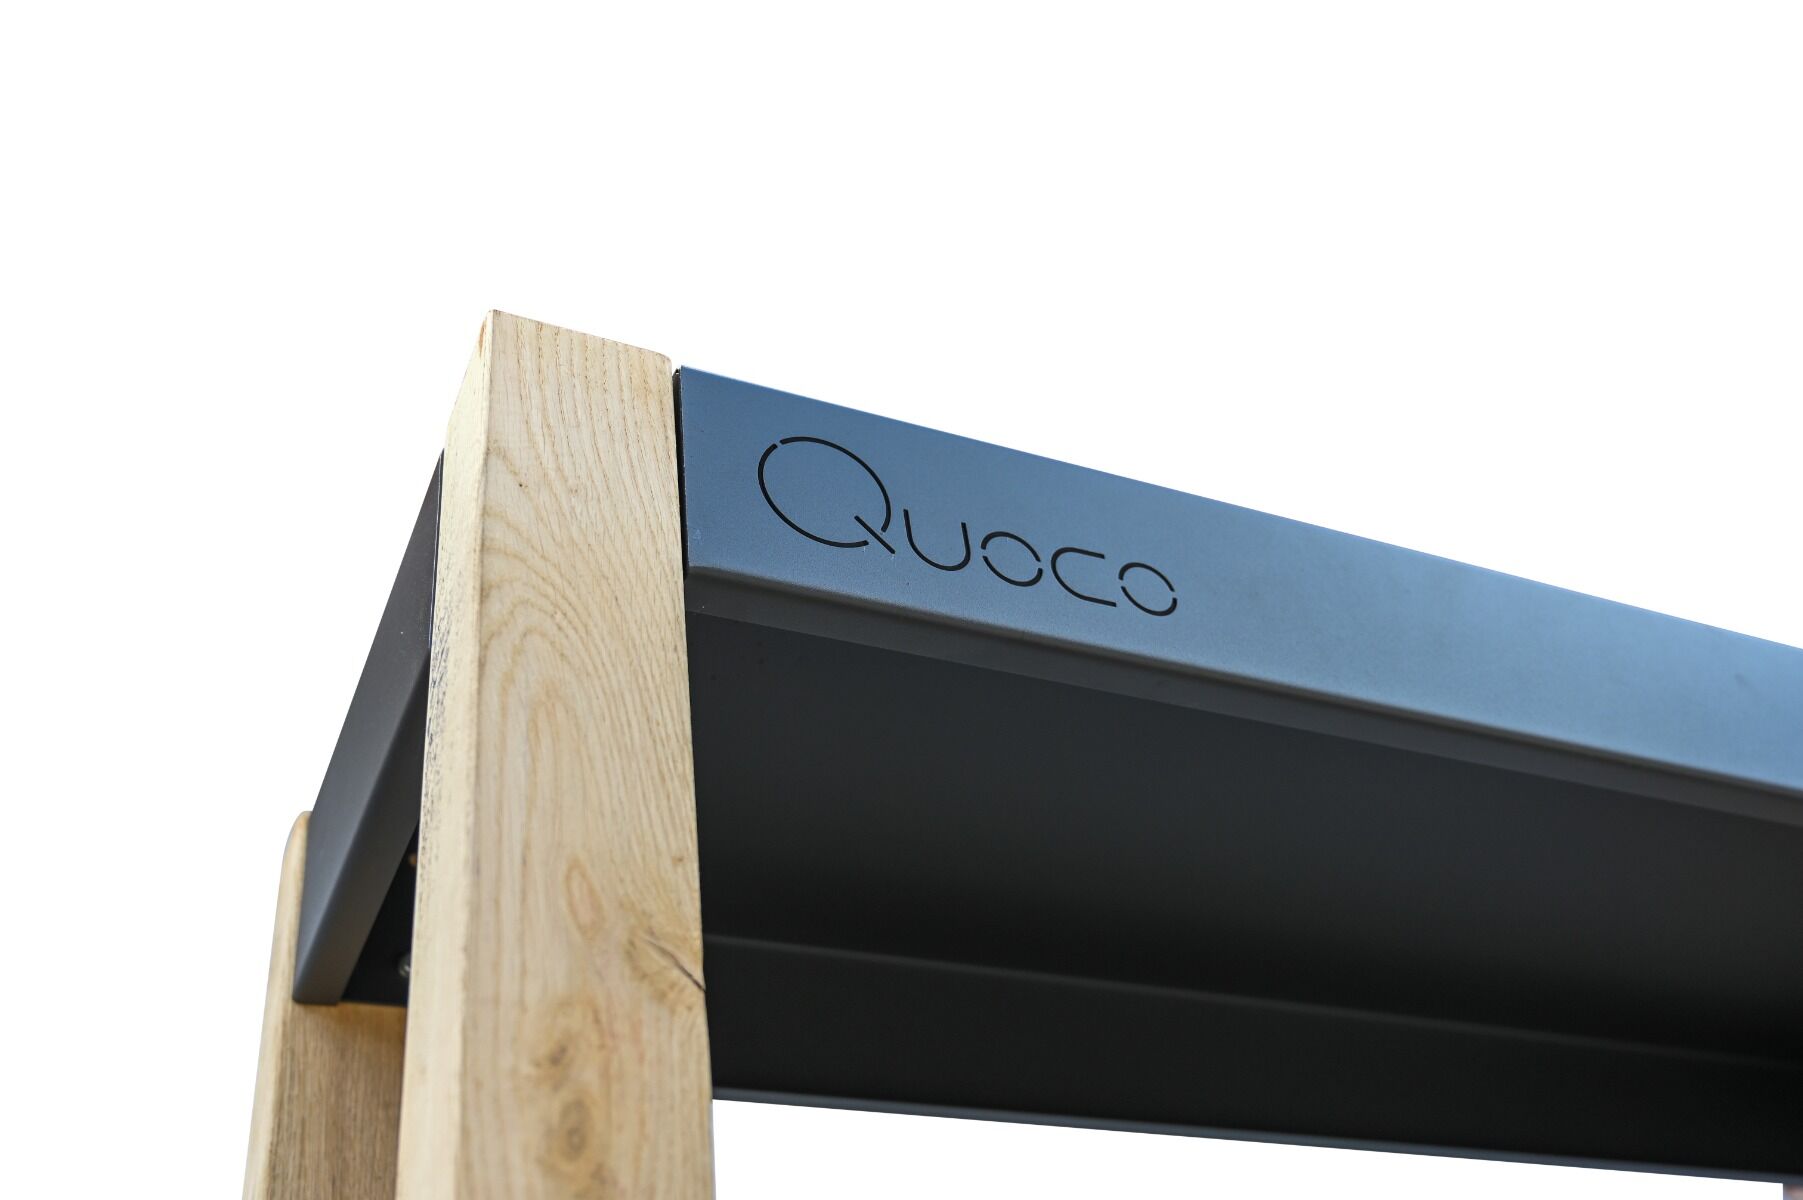 Quoco Wood Storage Cremagliera Dark Grey (3 sizes)